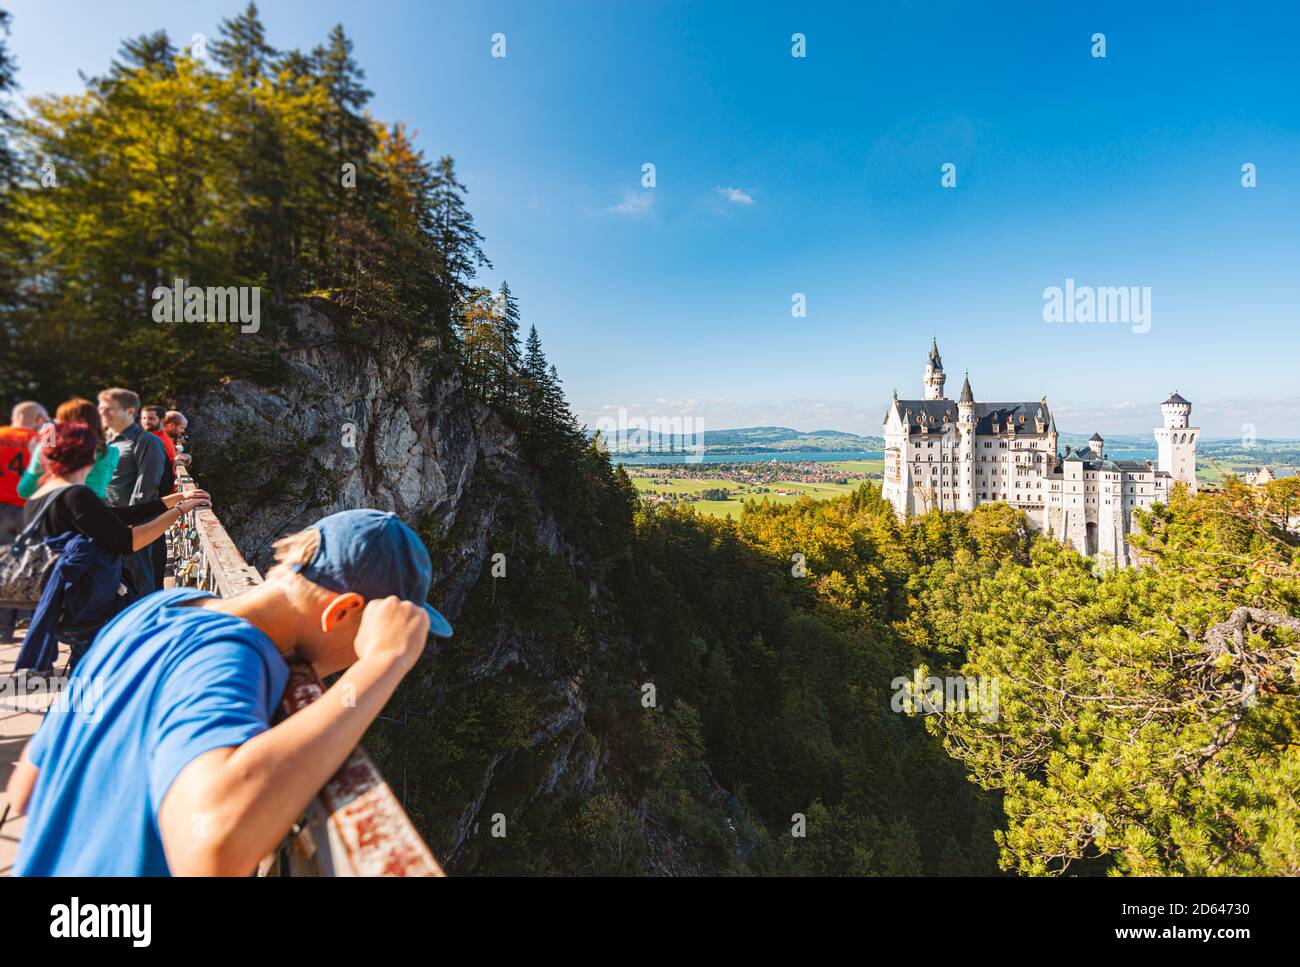 Fussen, Alemania - 27 DE SEPTIEMBRE de 2014: La gente disfruta de una hermosa vista del mundialmente famoso Castillo Neuschwanstein, el amigo del Renacimiento románico del siglo XIX Foto de stock